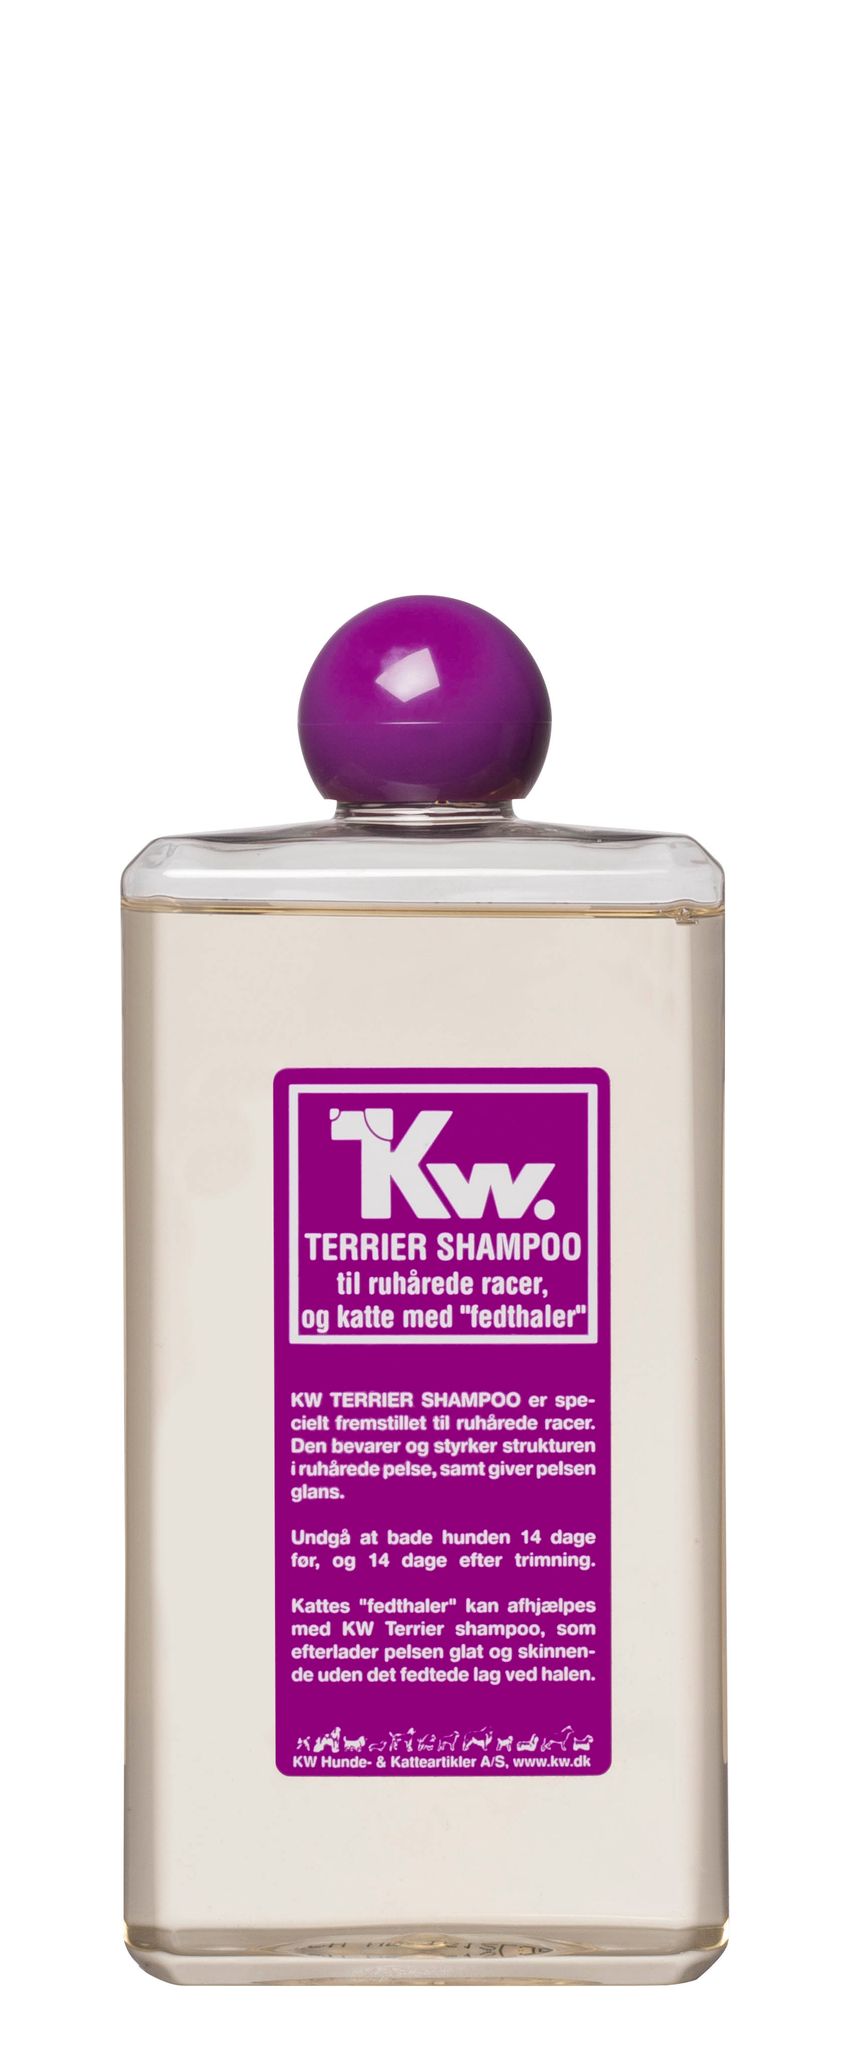 hensynsløs blanding vælge KW Terrier Shampoo er specielt fremstillet til ruhårede racer.